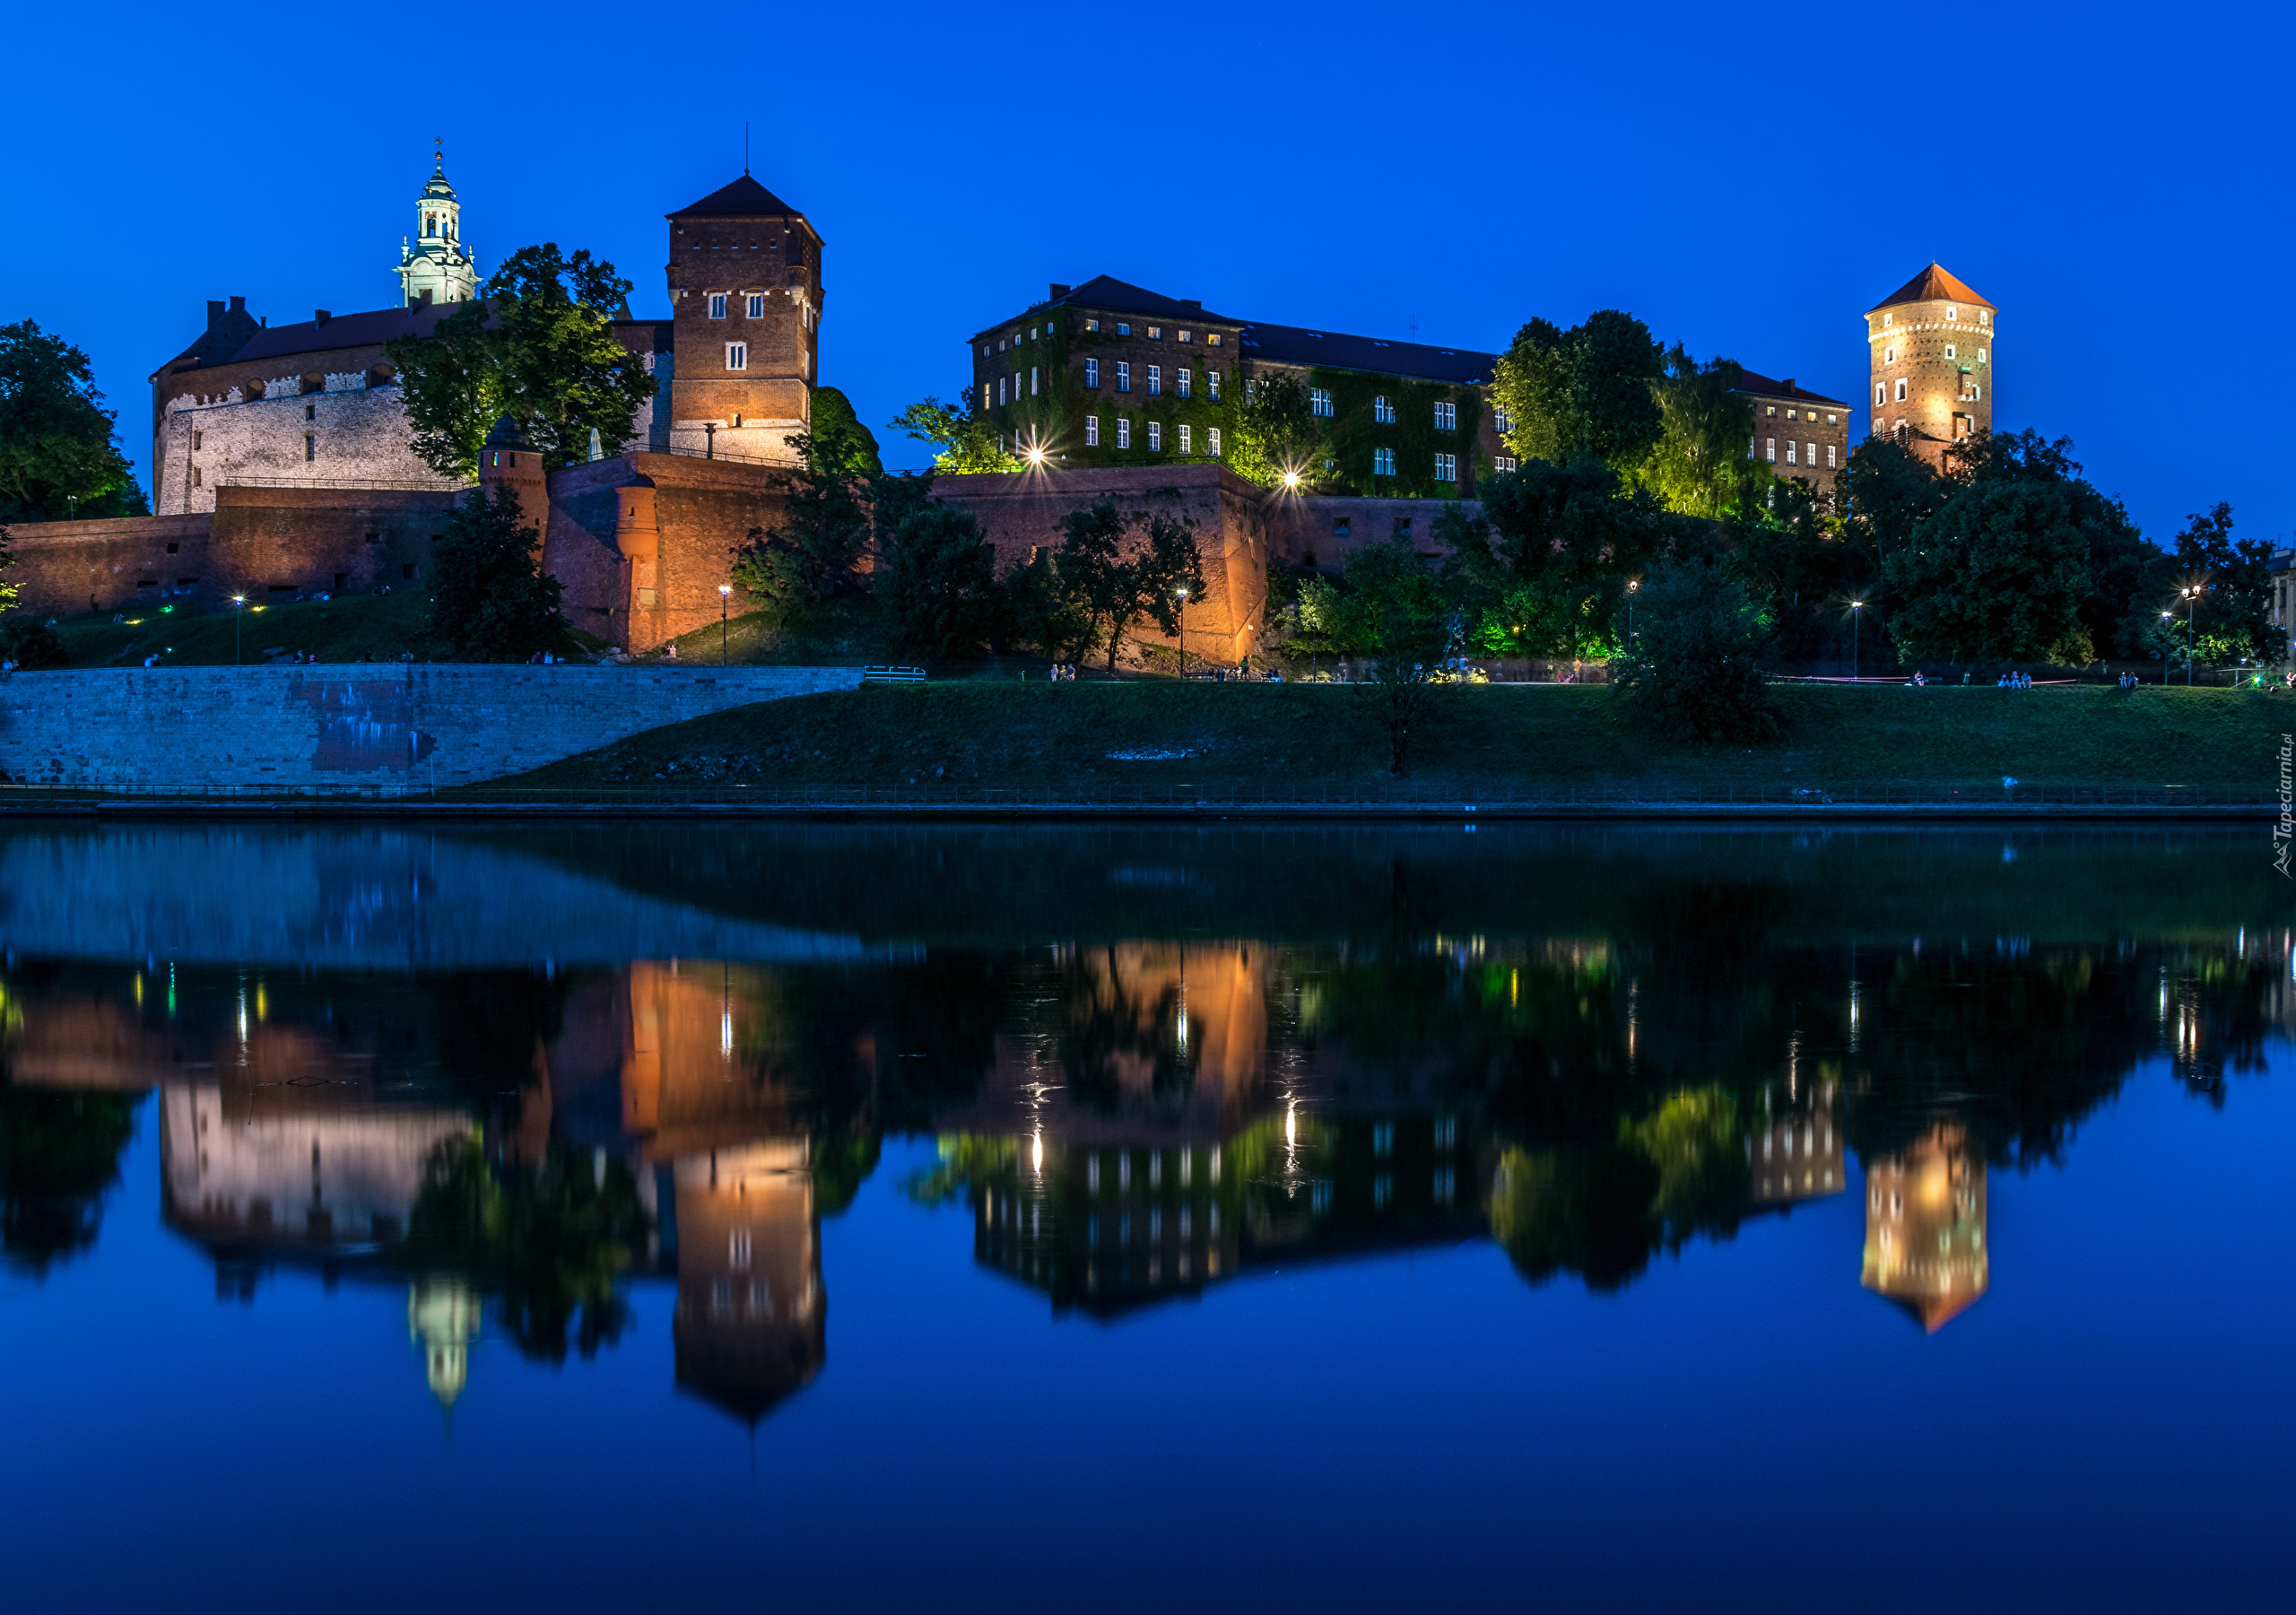 Zamek Królewski na Wawelu, Kraków, Polska, Noc, Zabytek, Wawel, Rzeka Wisła